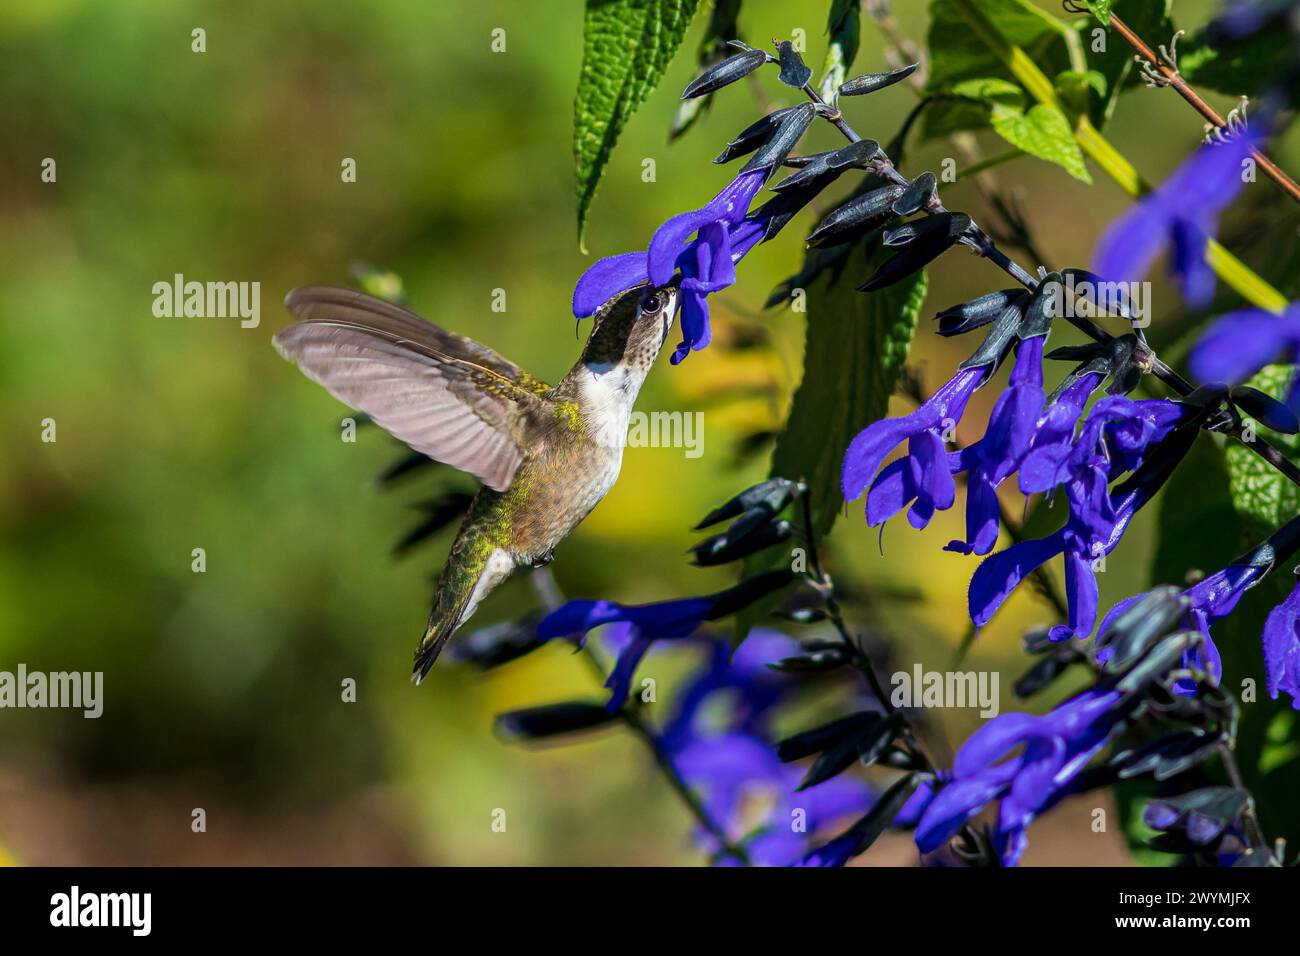 Kolibri mit Rubinkehle, der Nektar aus violetter Salvia-Blüte bekommt. Vogelbeobachtung im Hinterhof, Vogelbeobachtung und Naturschutzkonzept. Stockfoto